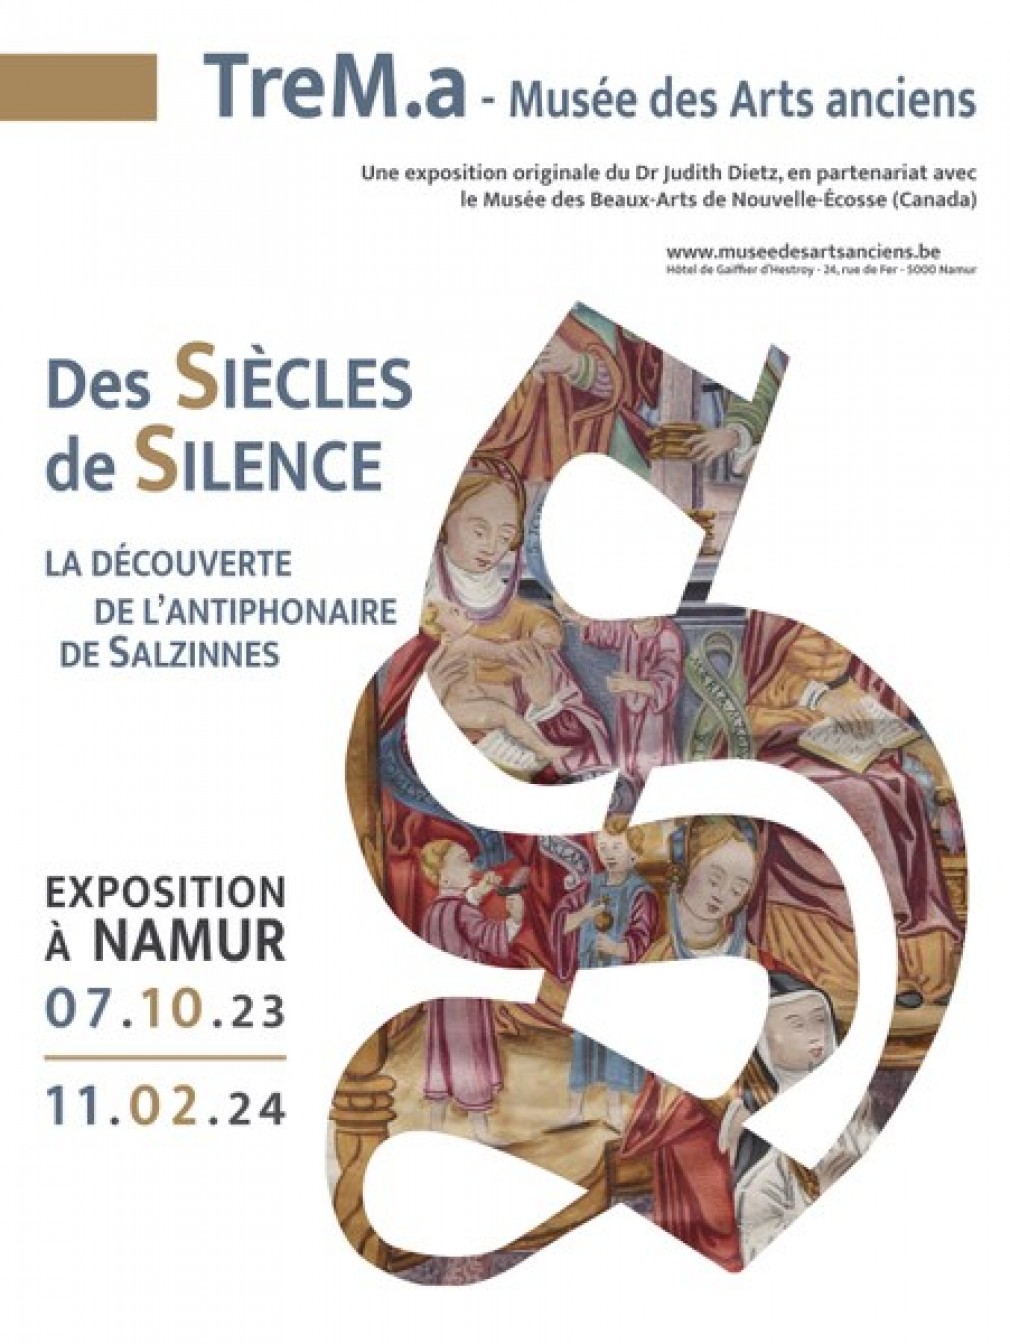 Namur exposition antiphonaire